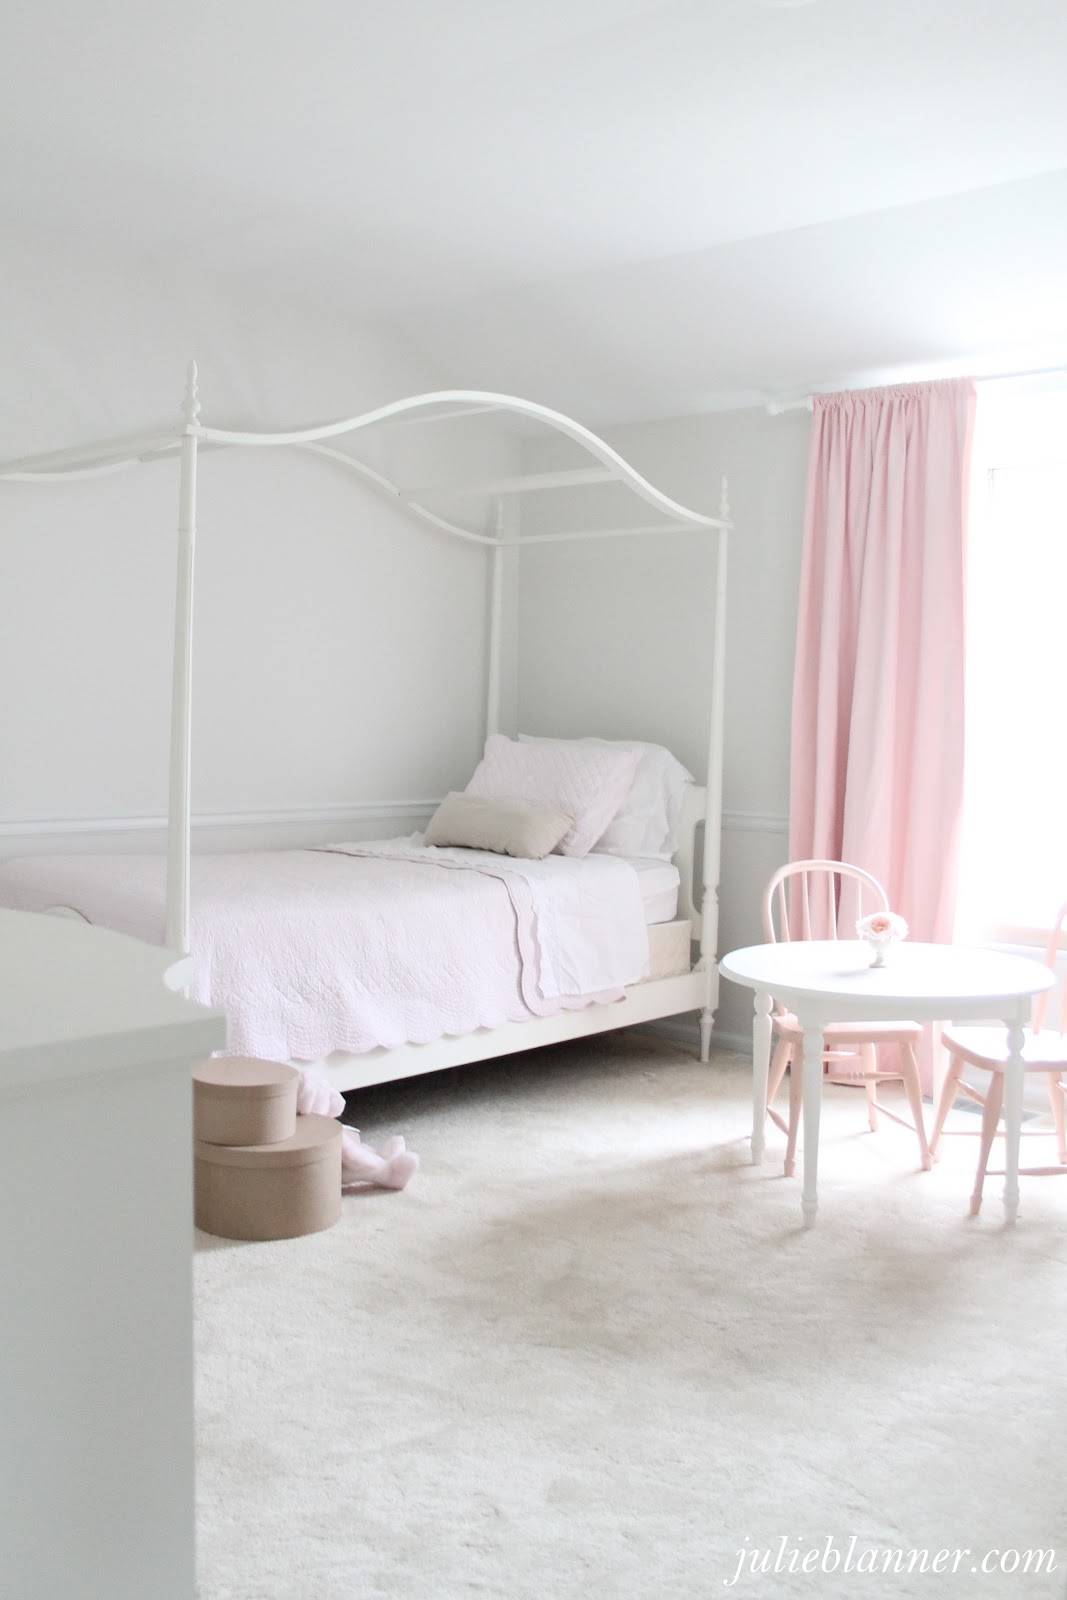 Adalyn's Pink and Cream Bedroom - Julie Blanner 